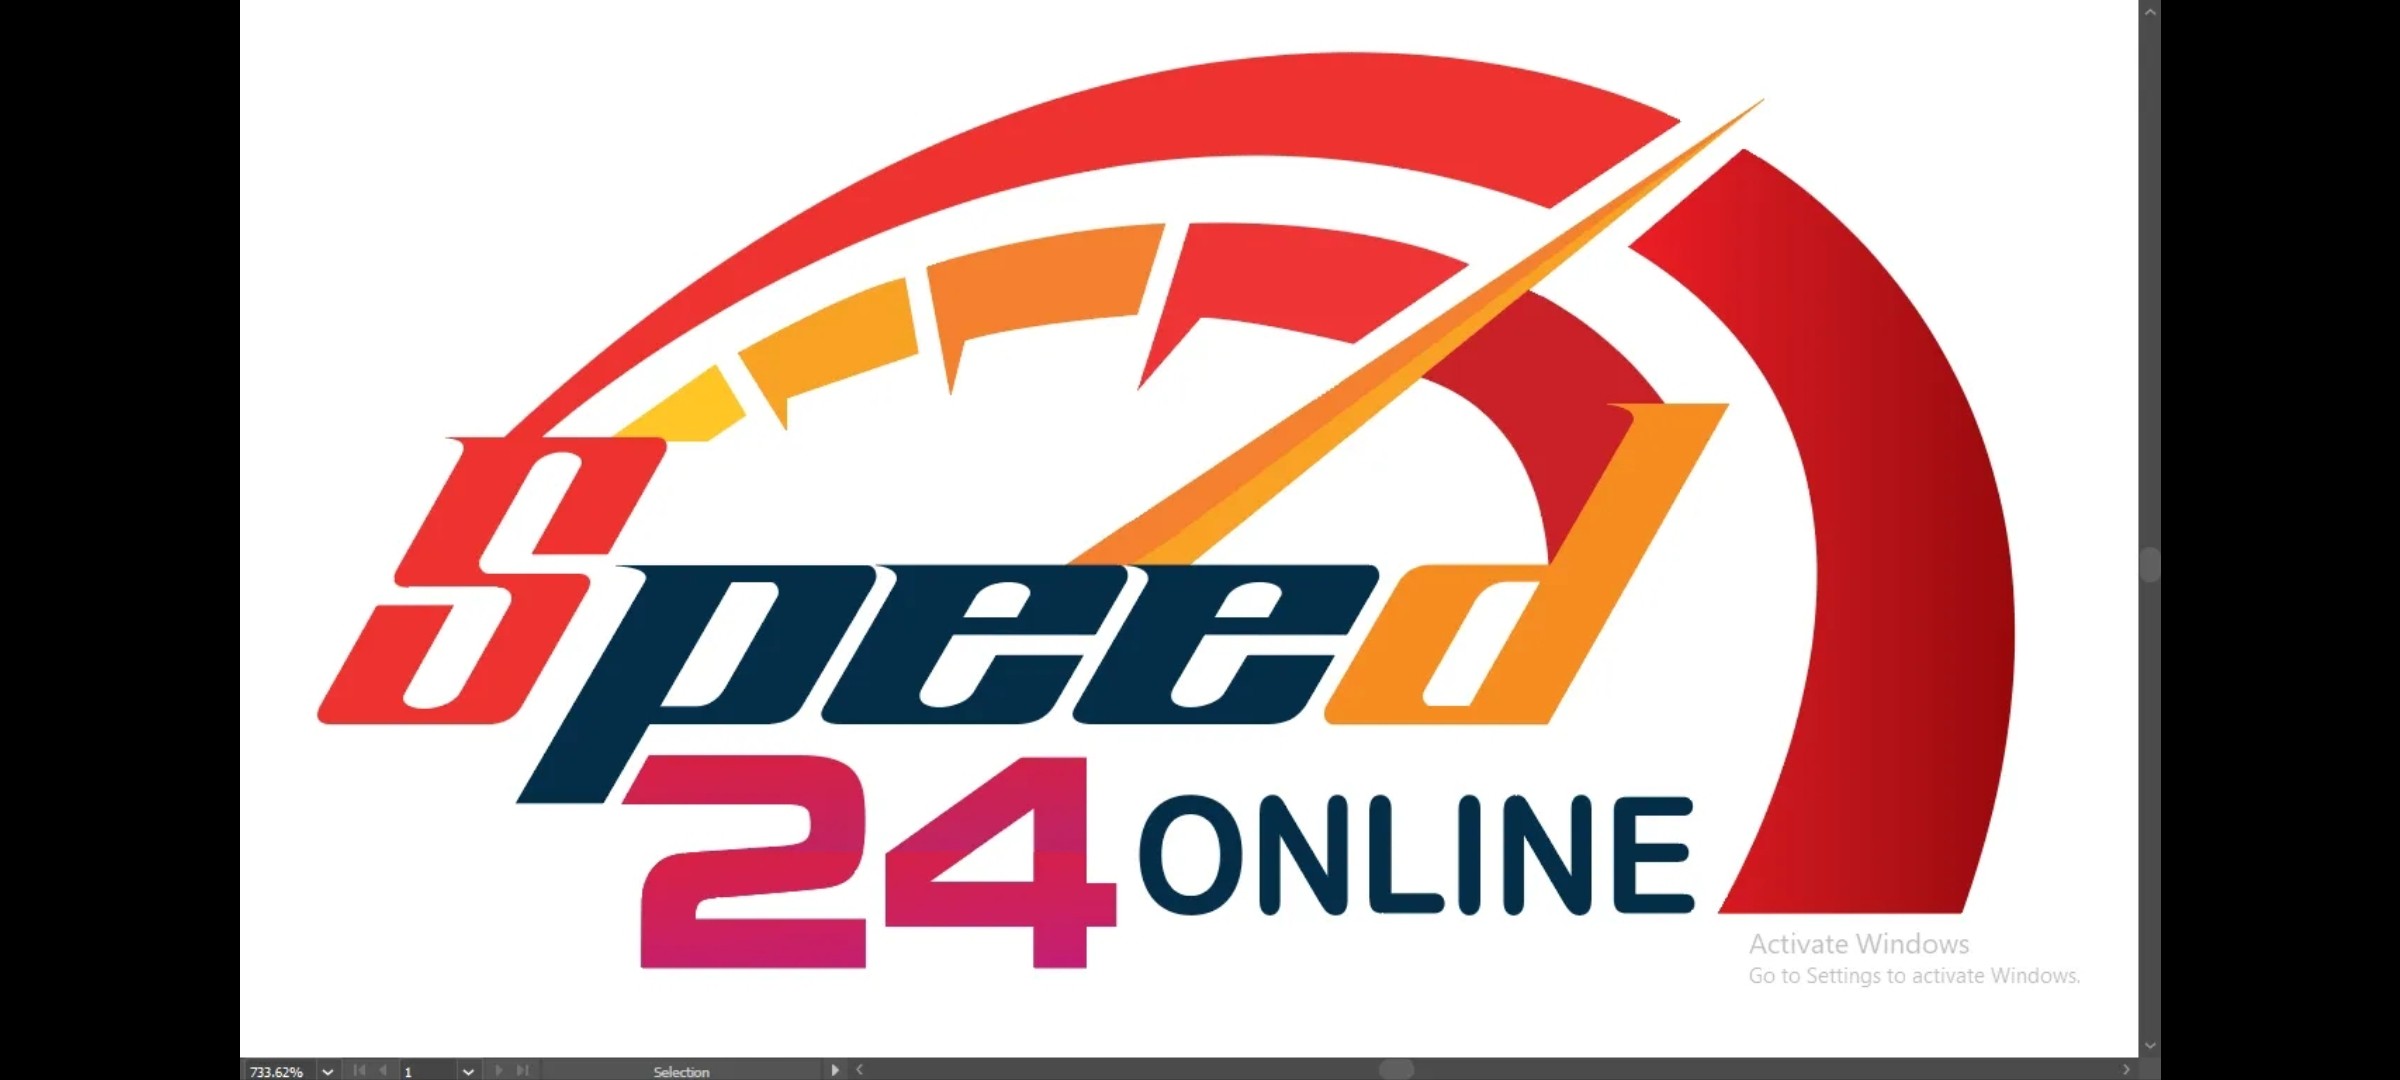 SPEED 24 ONLINE-logo